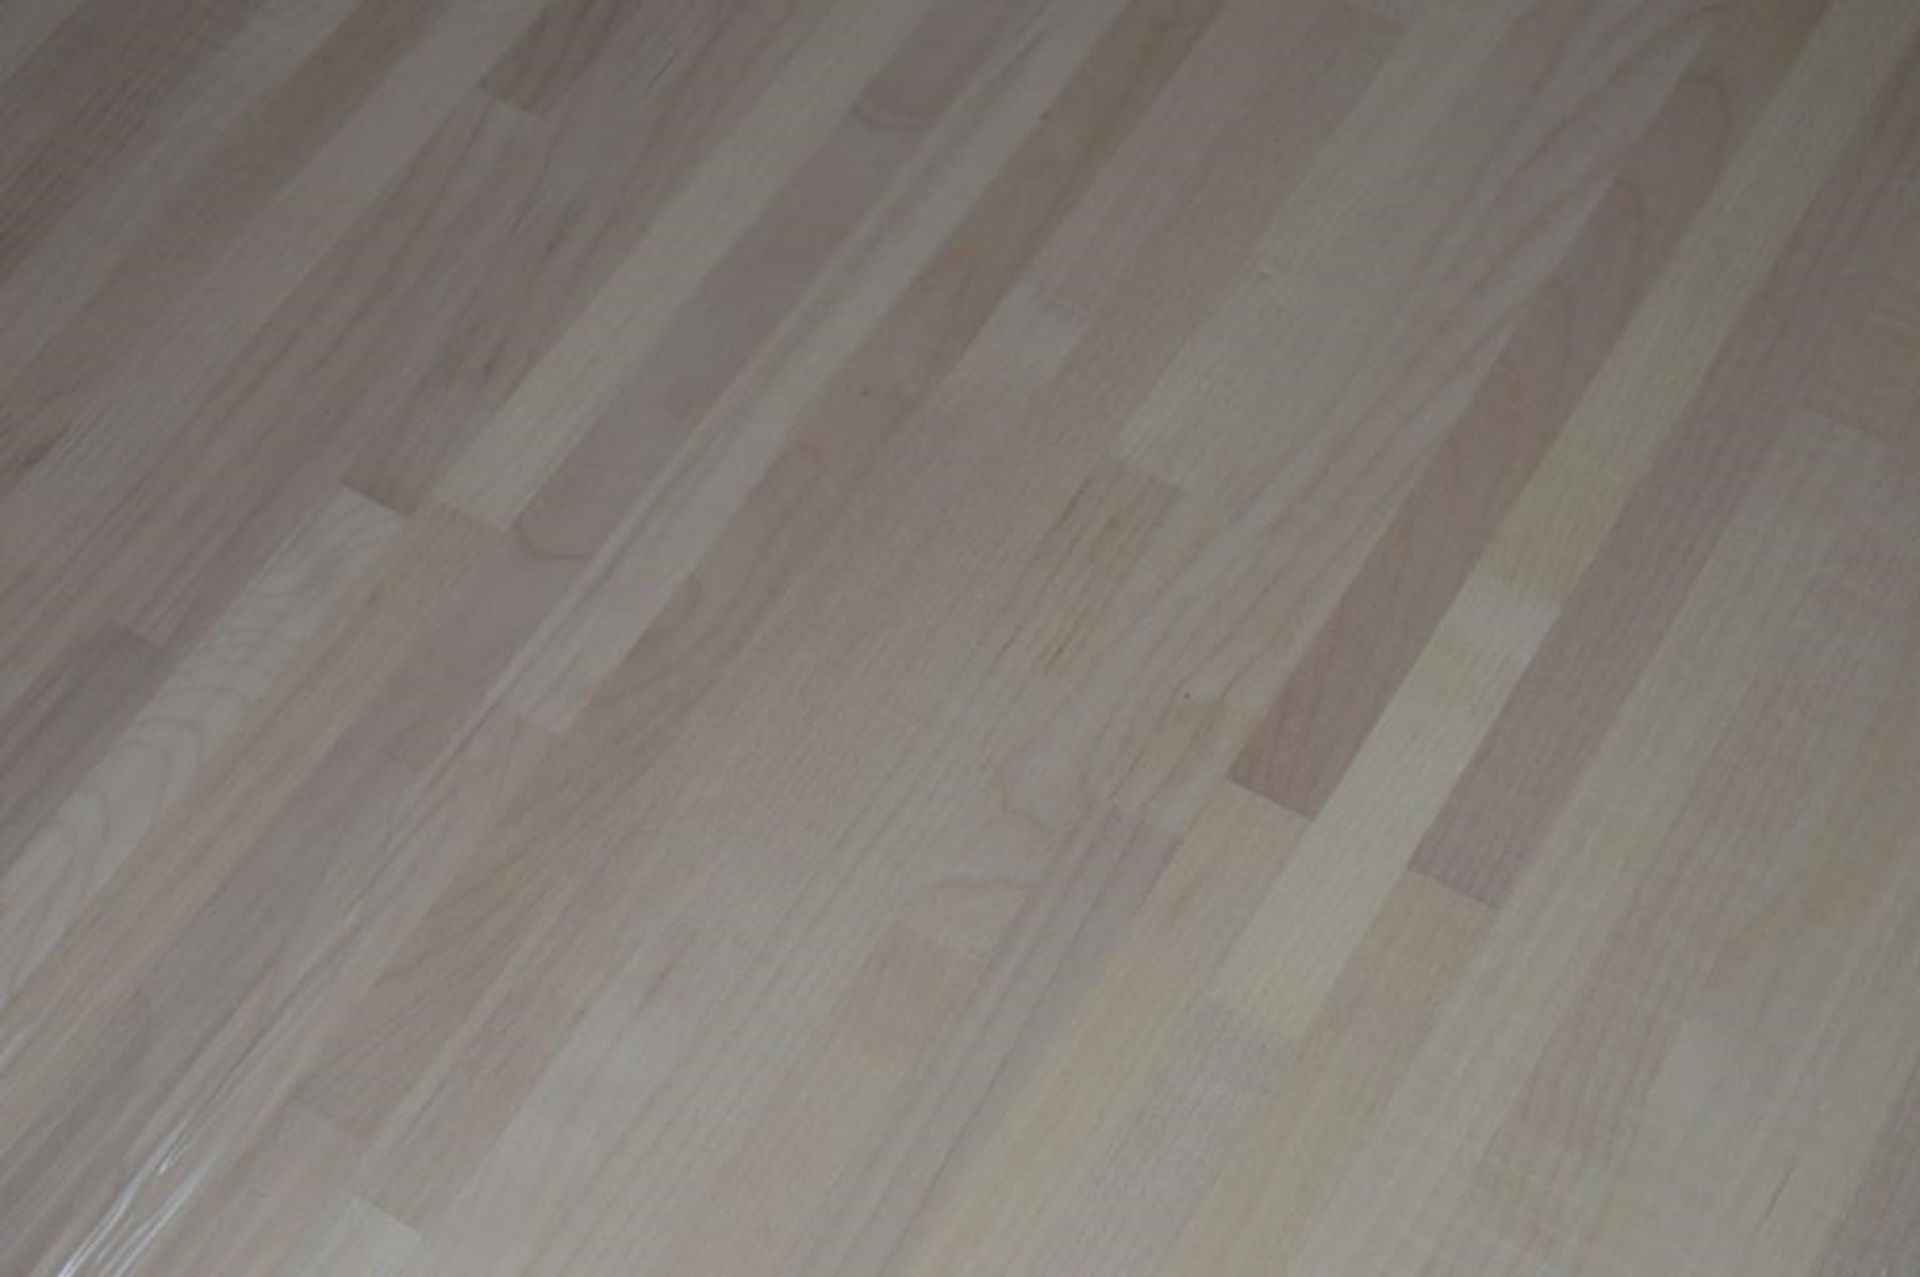 1 x Solid Wood Kitchen Worktop - EUROPEAN MAPLE - Maple Blockwood Kitchen Worktop - Size: 3000 x 650 - Image 5 of 5